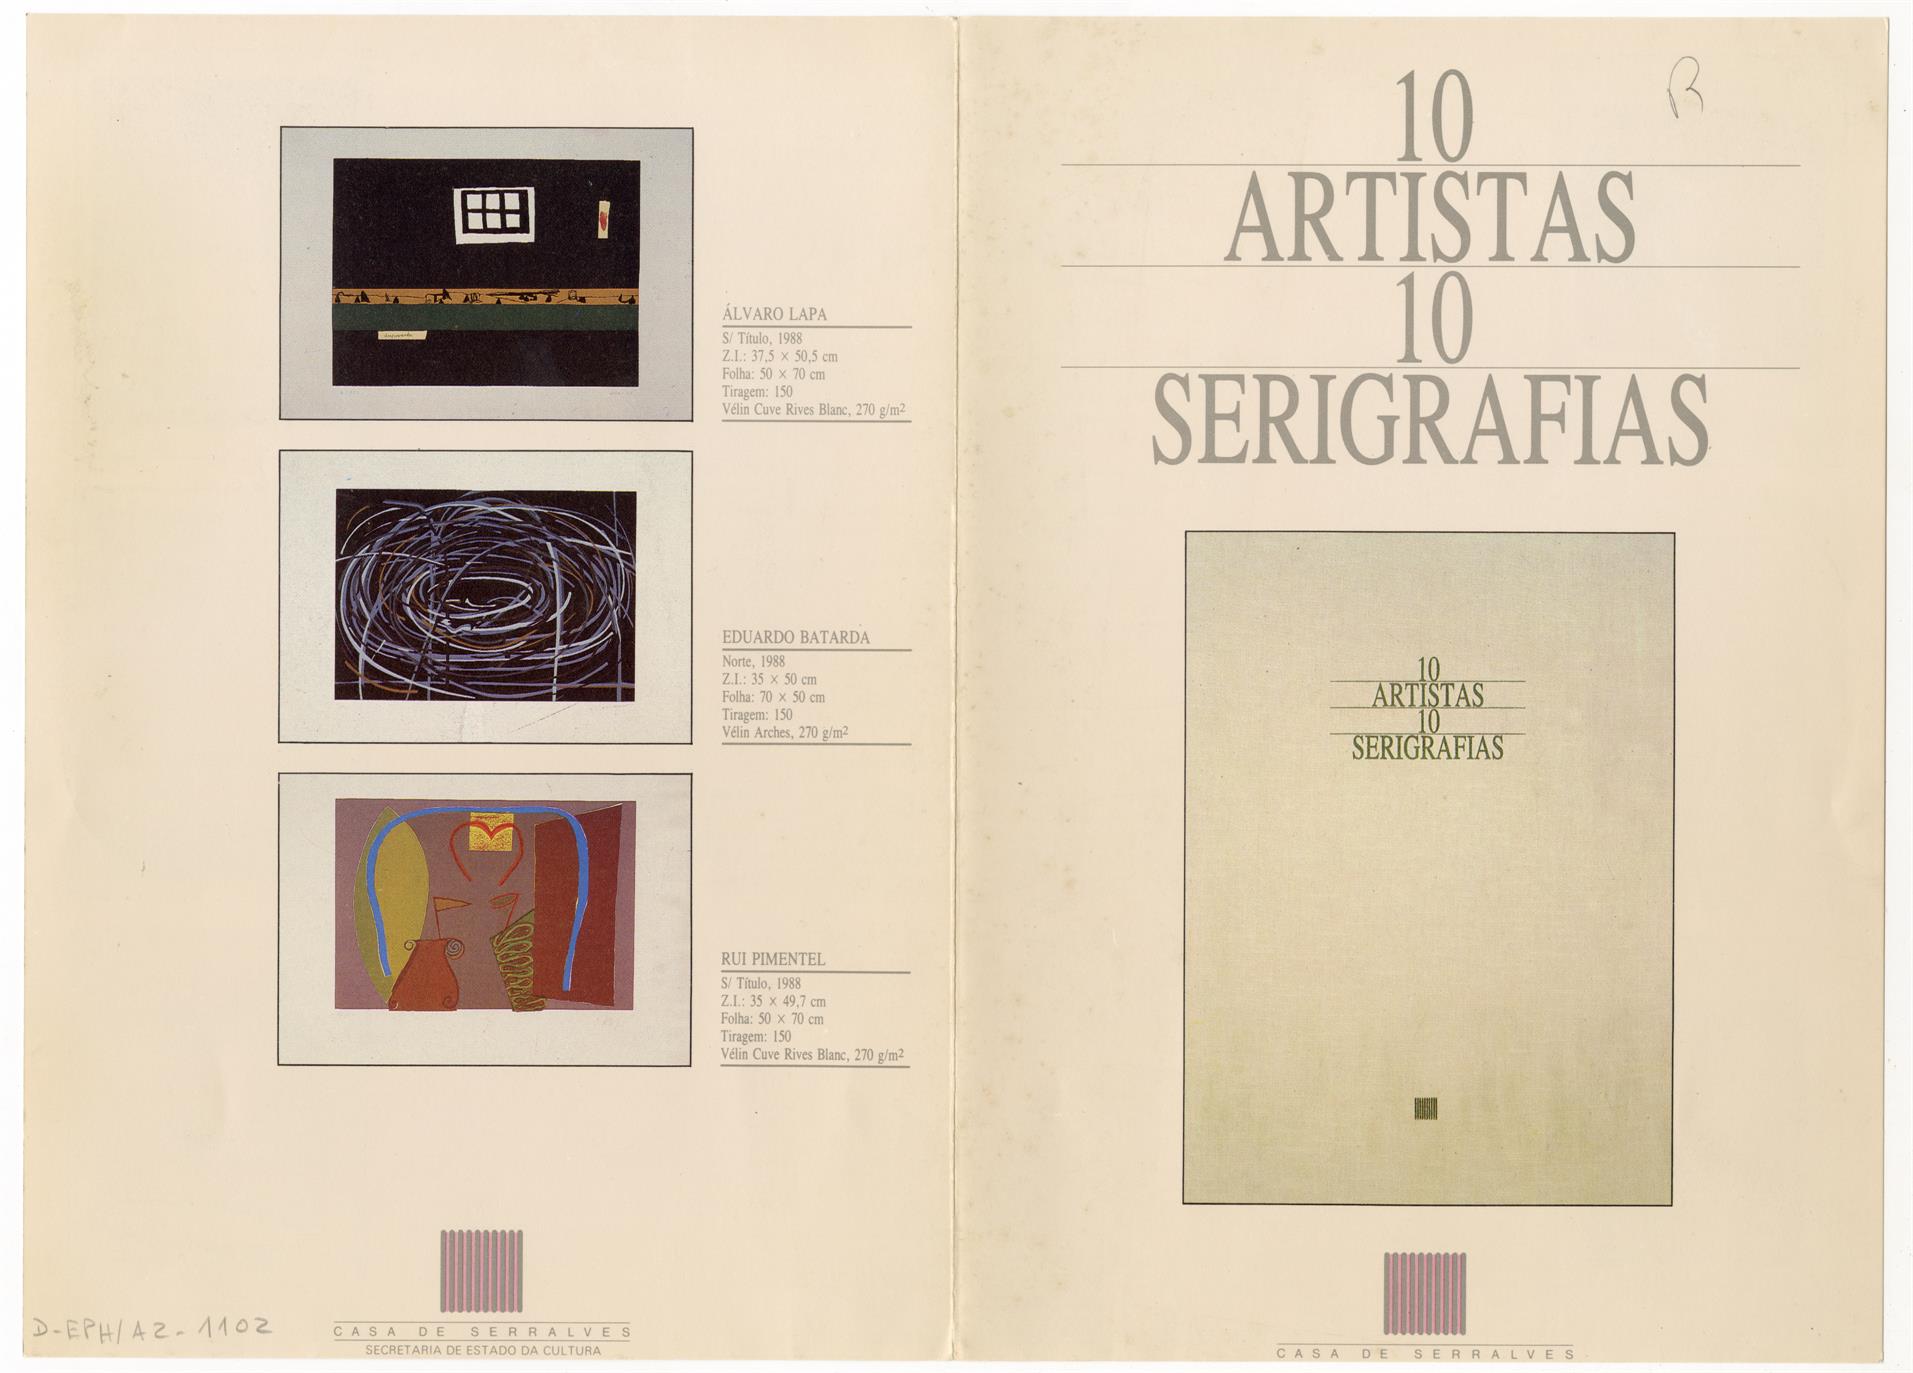 10 artistas, 10 serigrafias